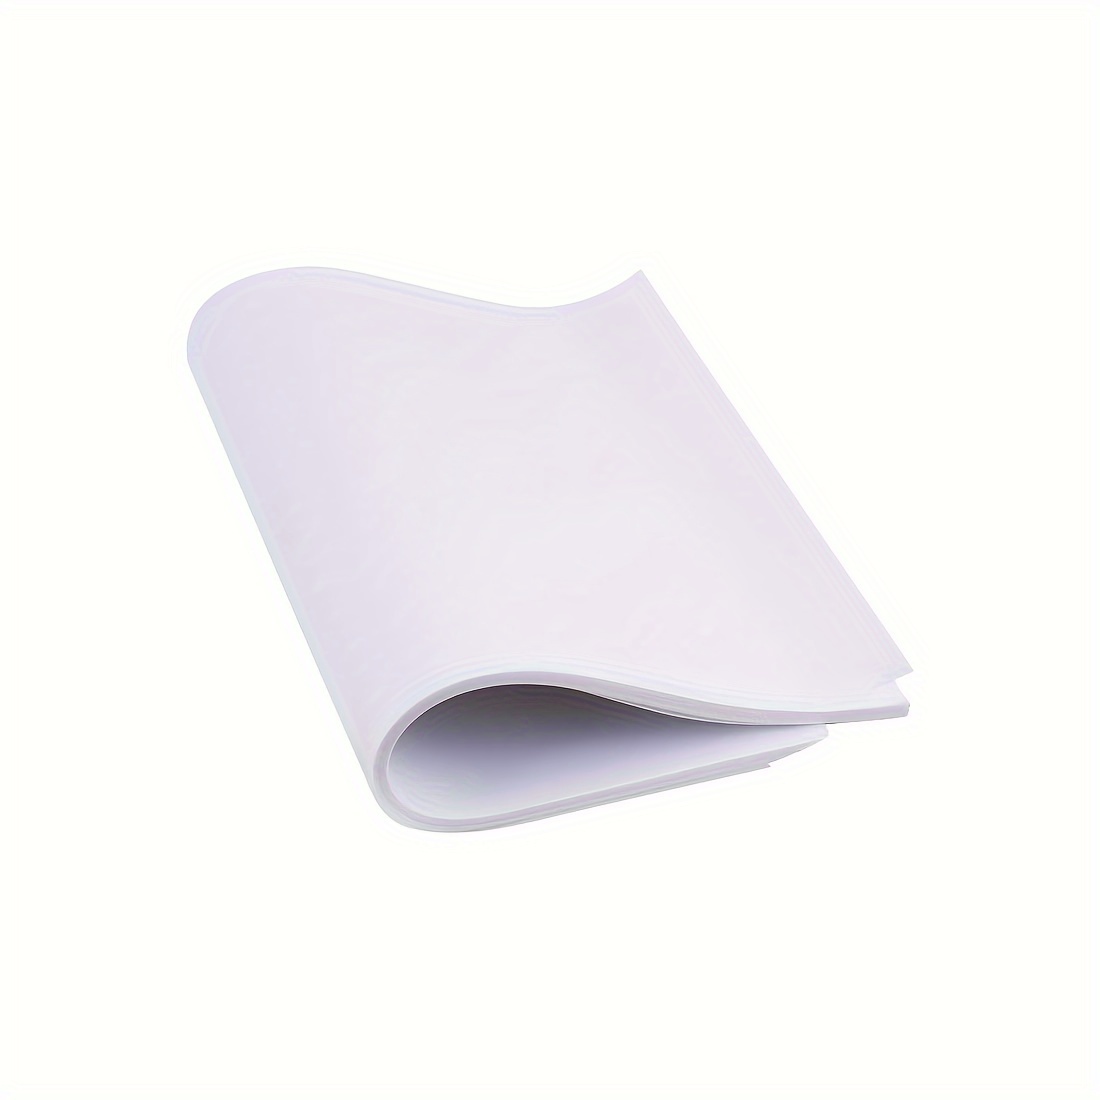 100pcs Papier Calque, Papier À Dessin 100 Feuilles Papier De Transfert  Papier Calque Pad Papier Translucide Blanc Papier De Dessin Pour Dessin